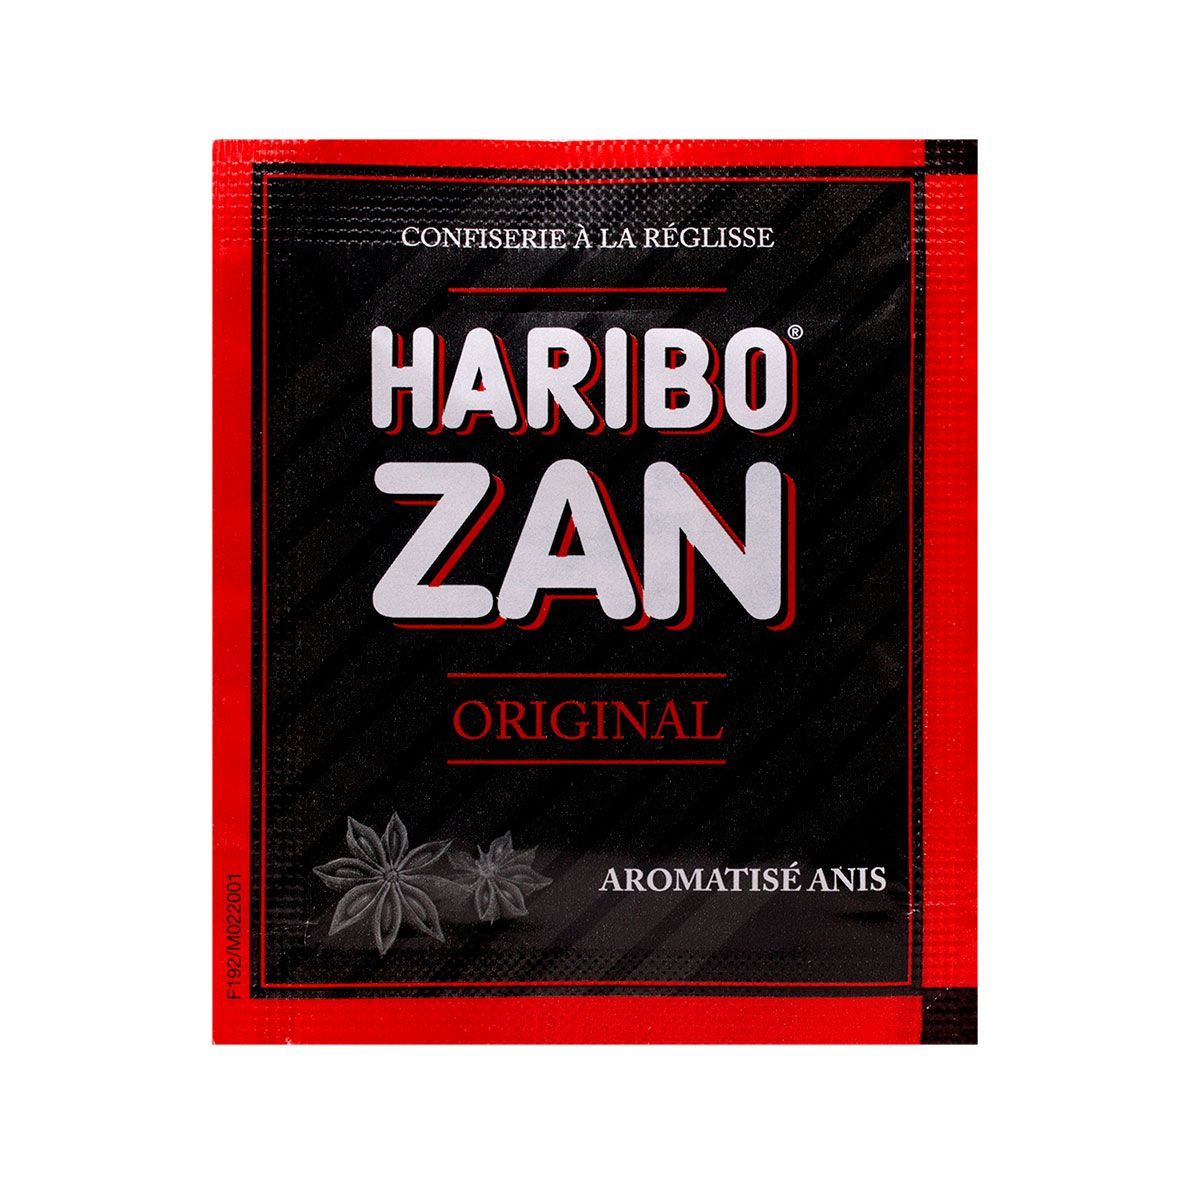 Haribo zan original Super DIet est une confiserie à la réglisse aromatisée  à l'anis ou à la menthe.